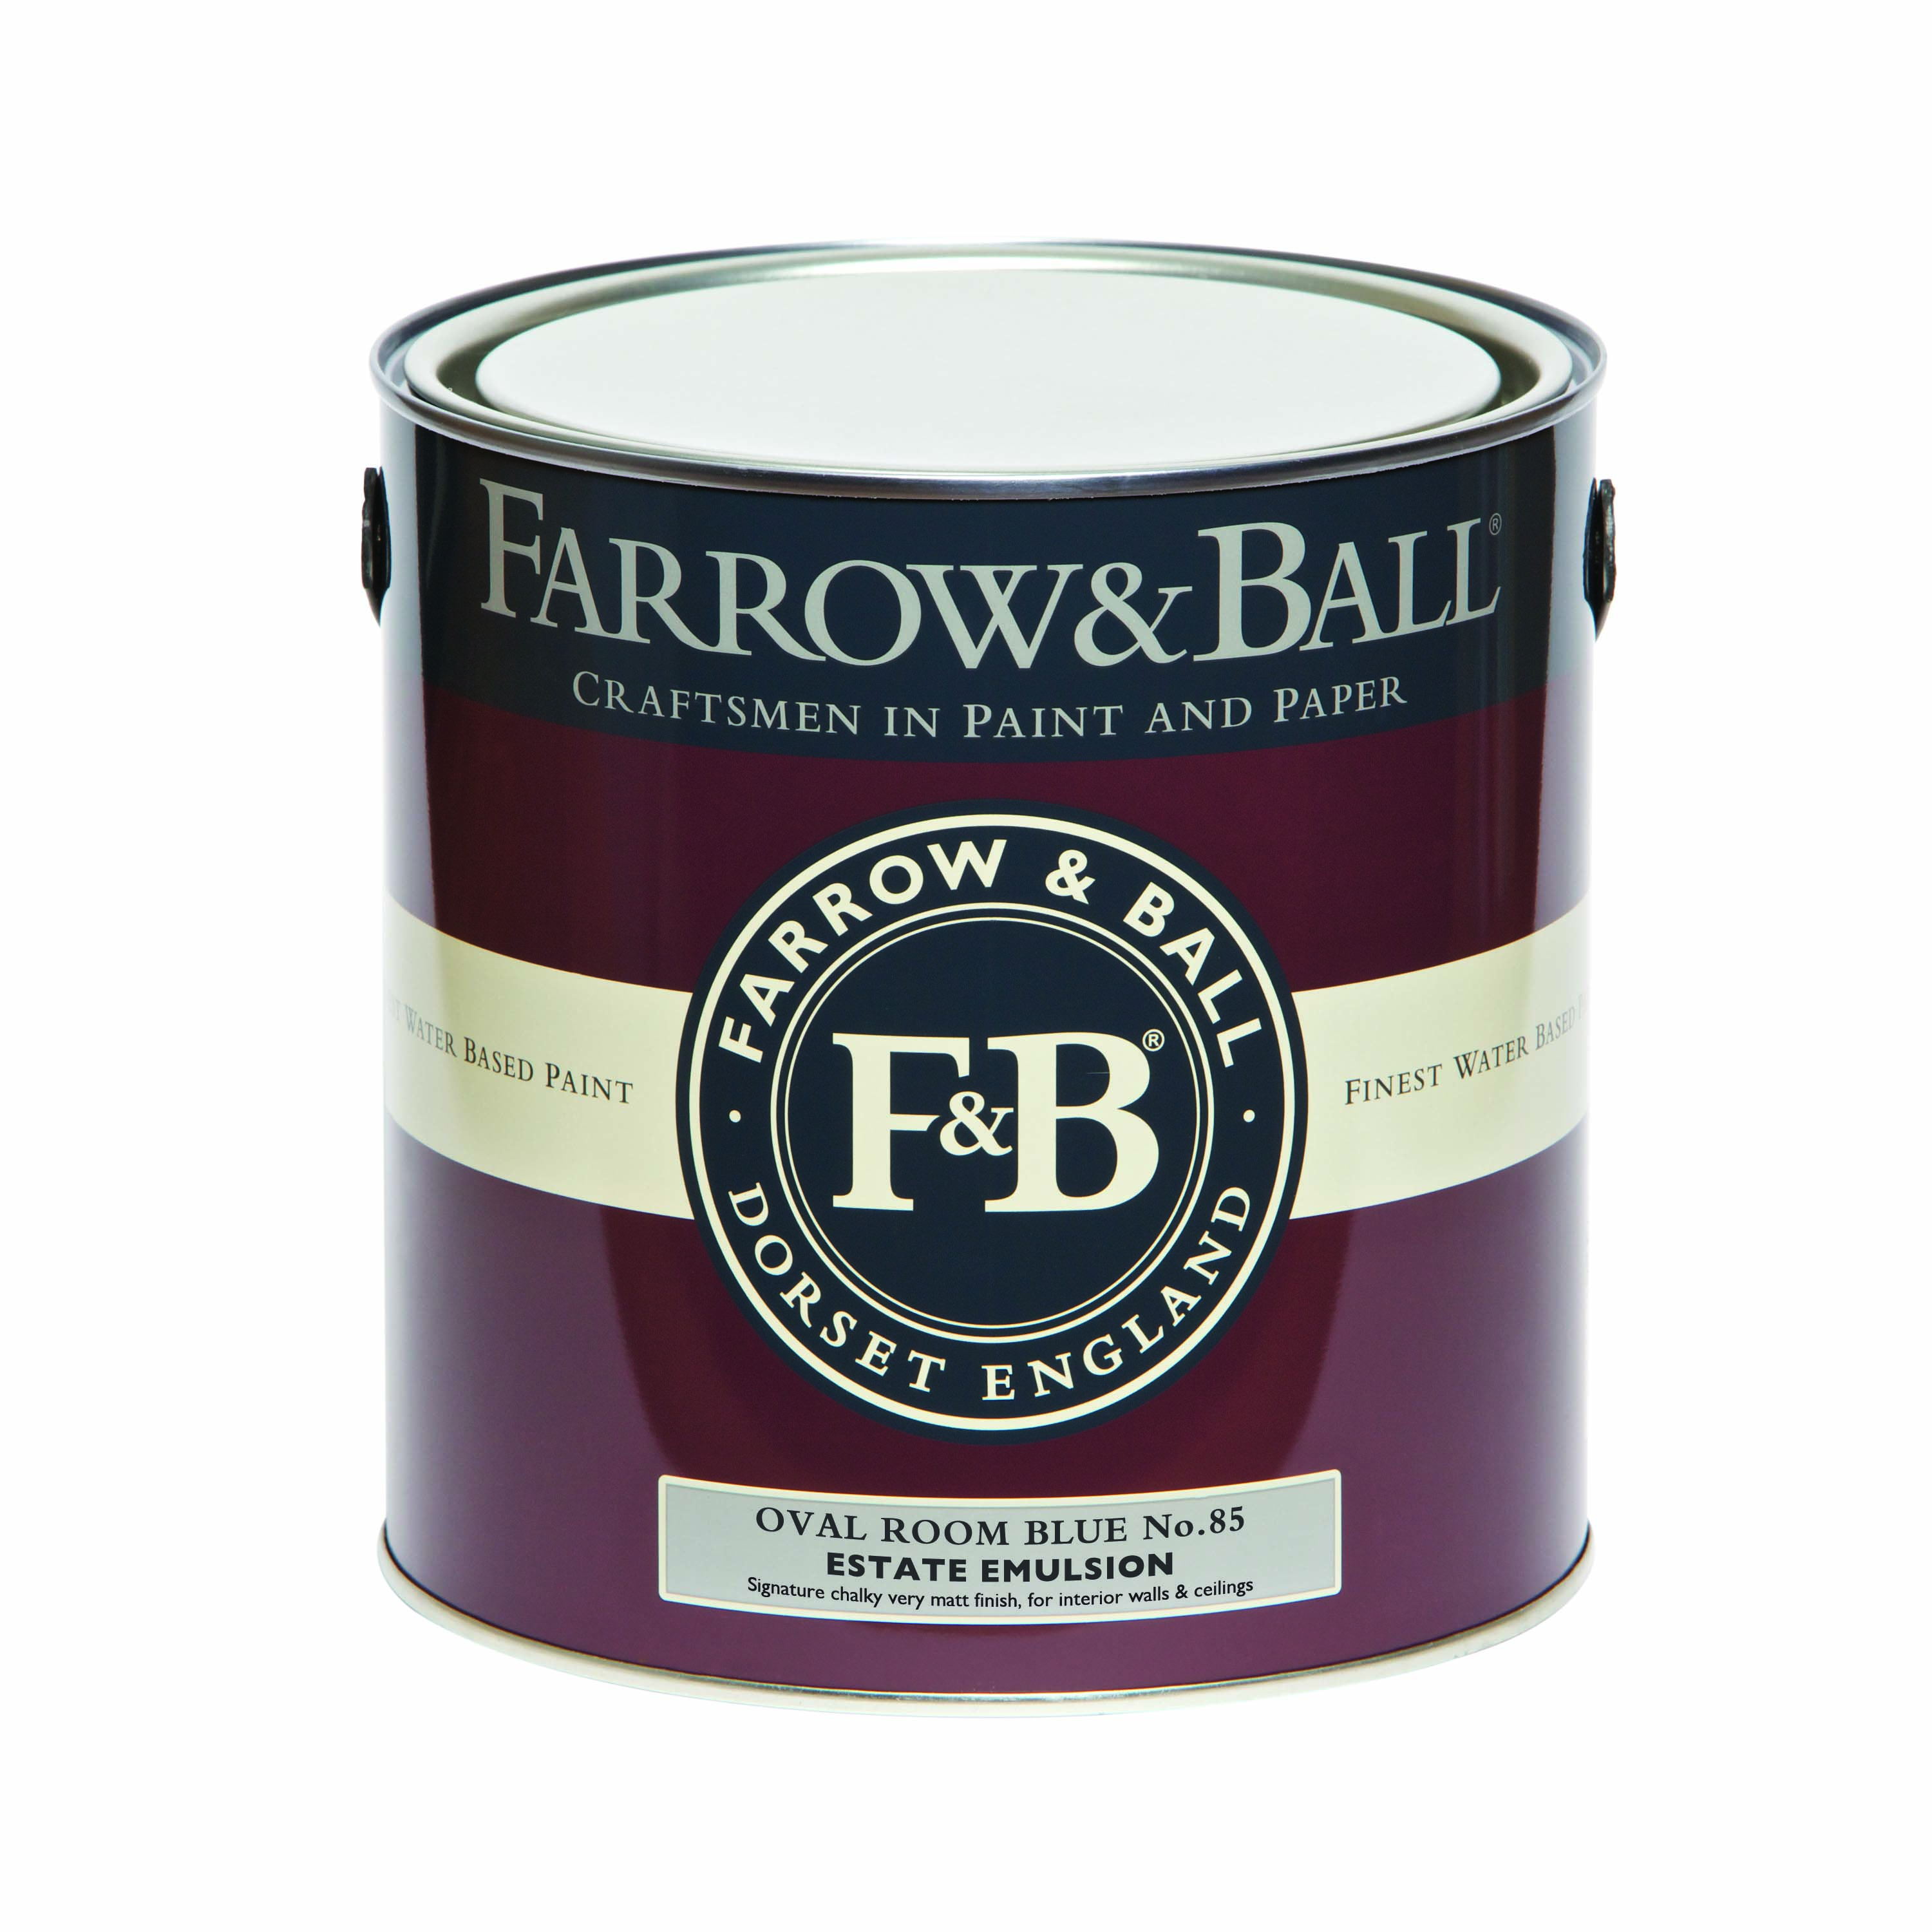 Farrow & Ball Oval Room Blue